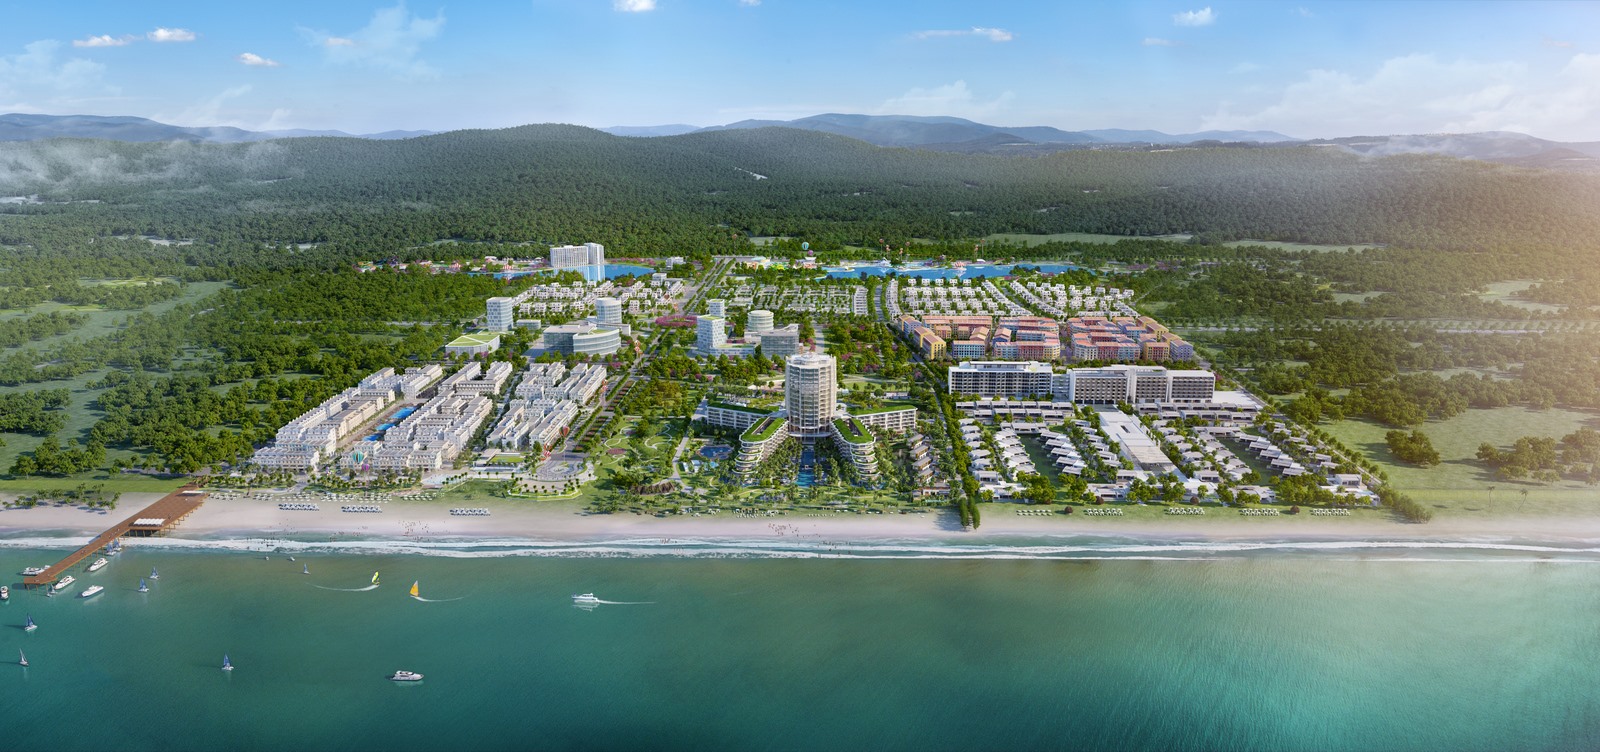 Với những dự án như Phu Quoc Marina, Bãi Trường hứa hẹn sẽ tạo nên “cú huých” cho du lịch ở đảo ngọc Phú Quốc